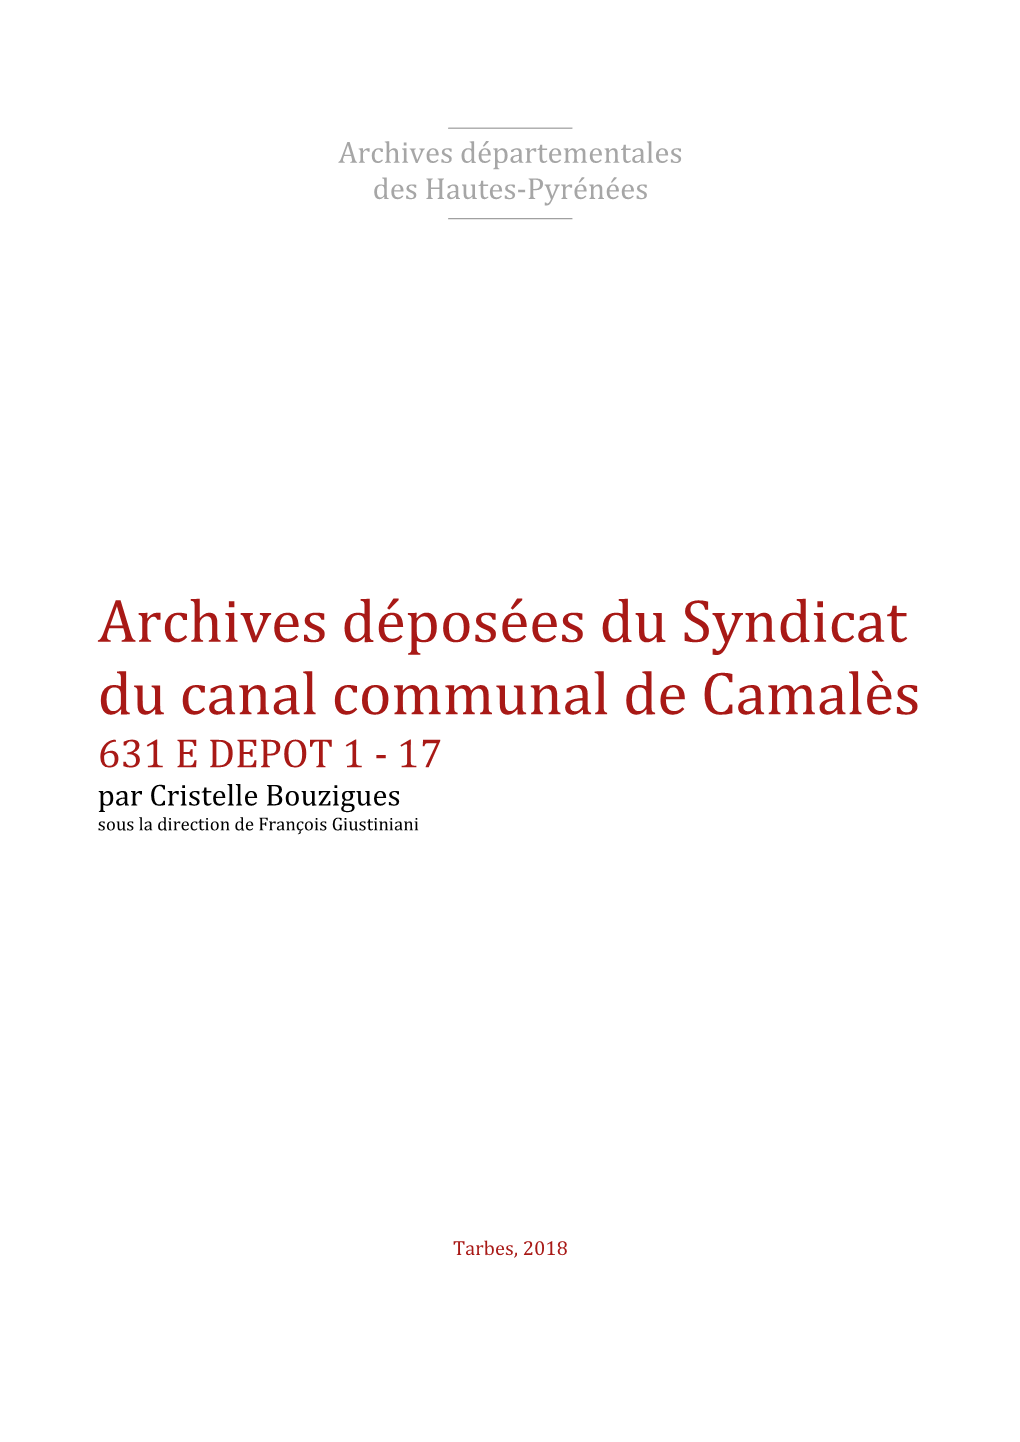 Archives Déposées Du Syndicat Du Canal Communal De Camalès 631 E DEPOT 1 - 17 Par Cristelle Bouzigues Sous La Direction De François Giustiniani